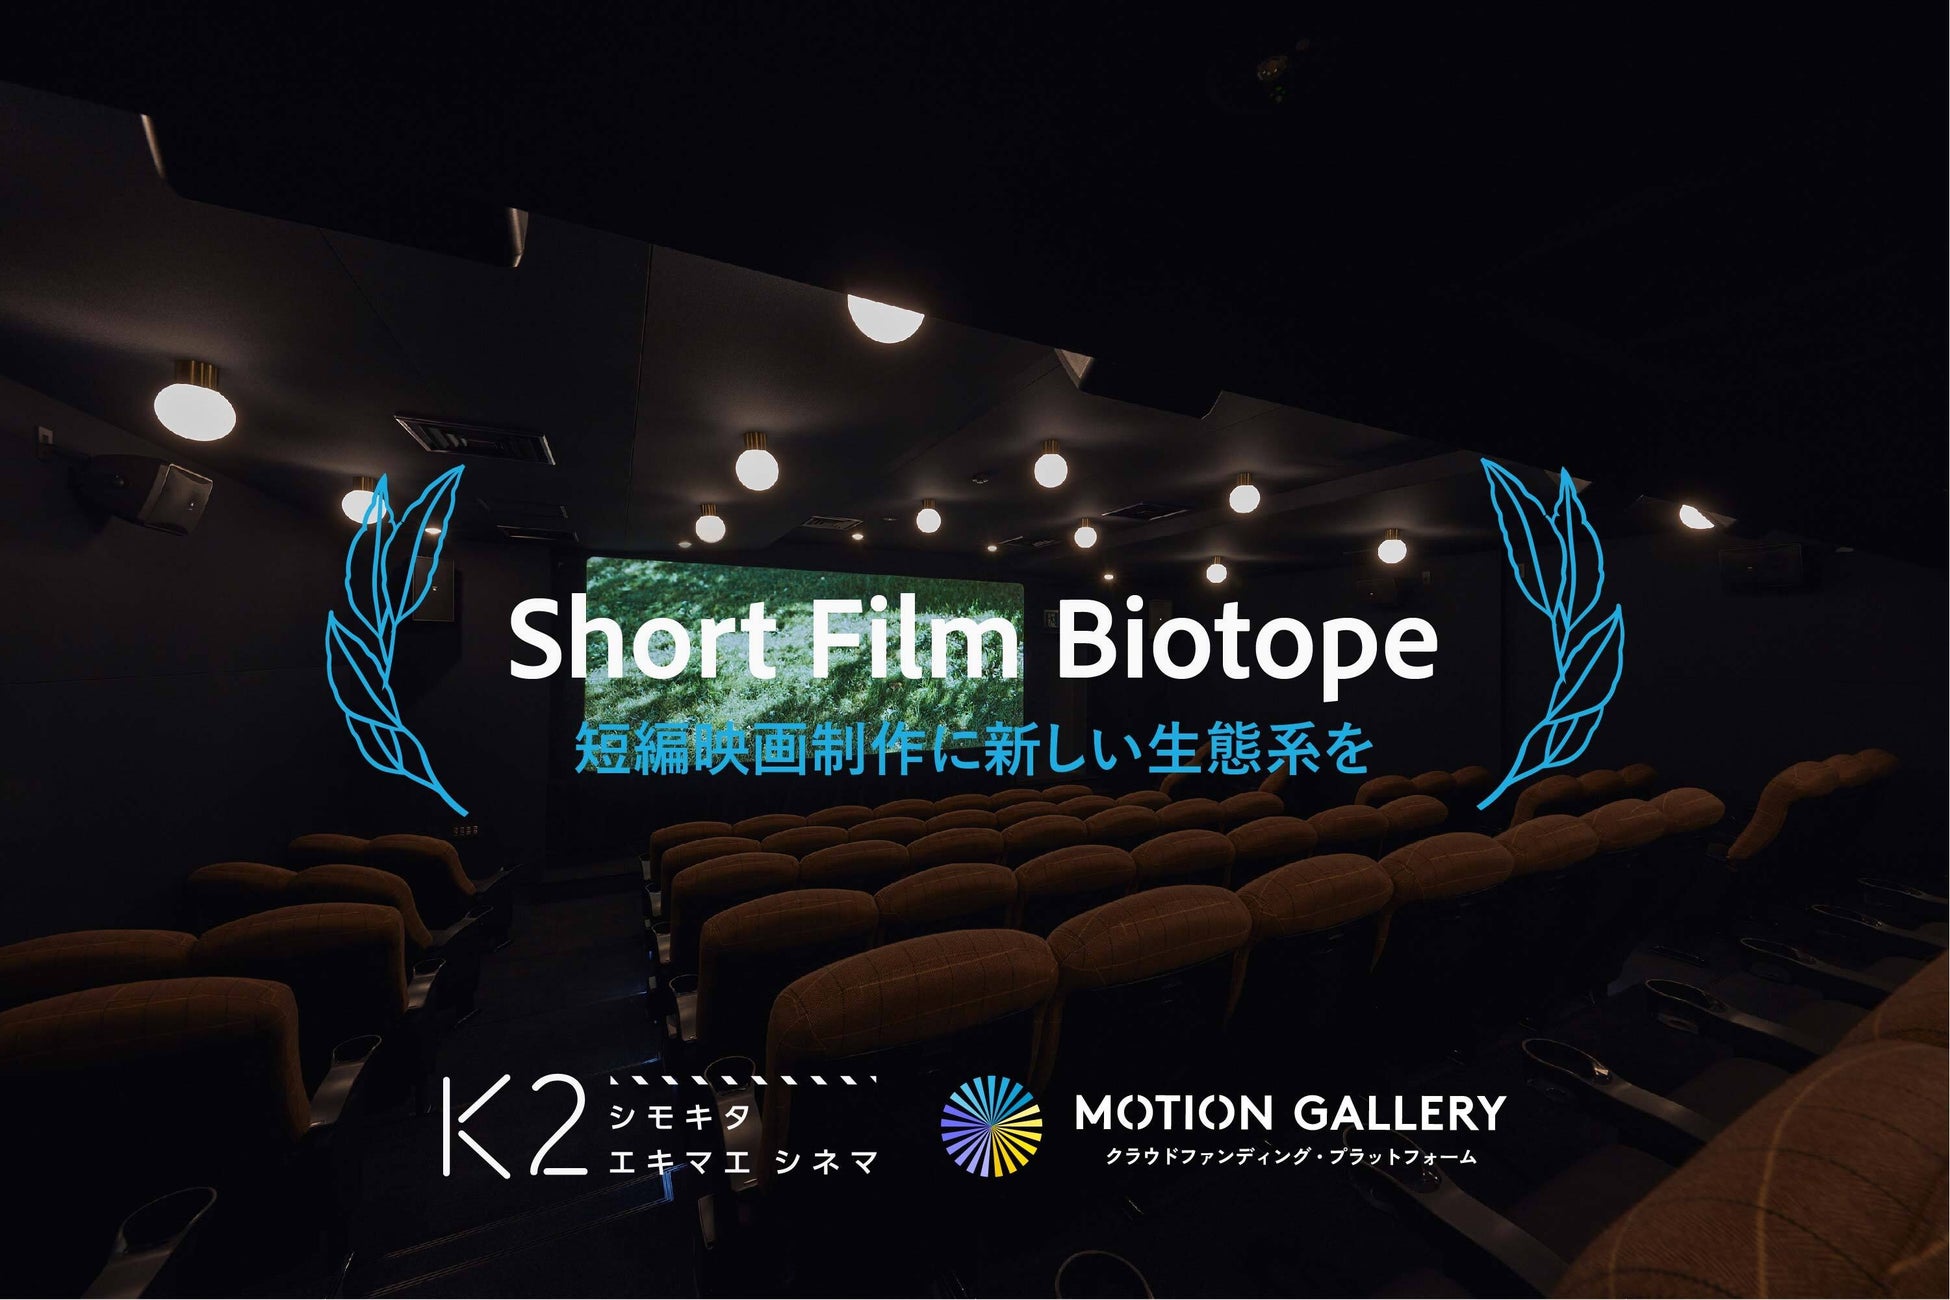 短編映画が持つ新しい才能が育まれる可能性を拡げ、課題を解消するための新プログラム“Short Film Biotope”開始